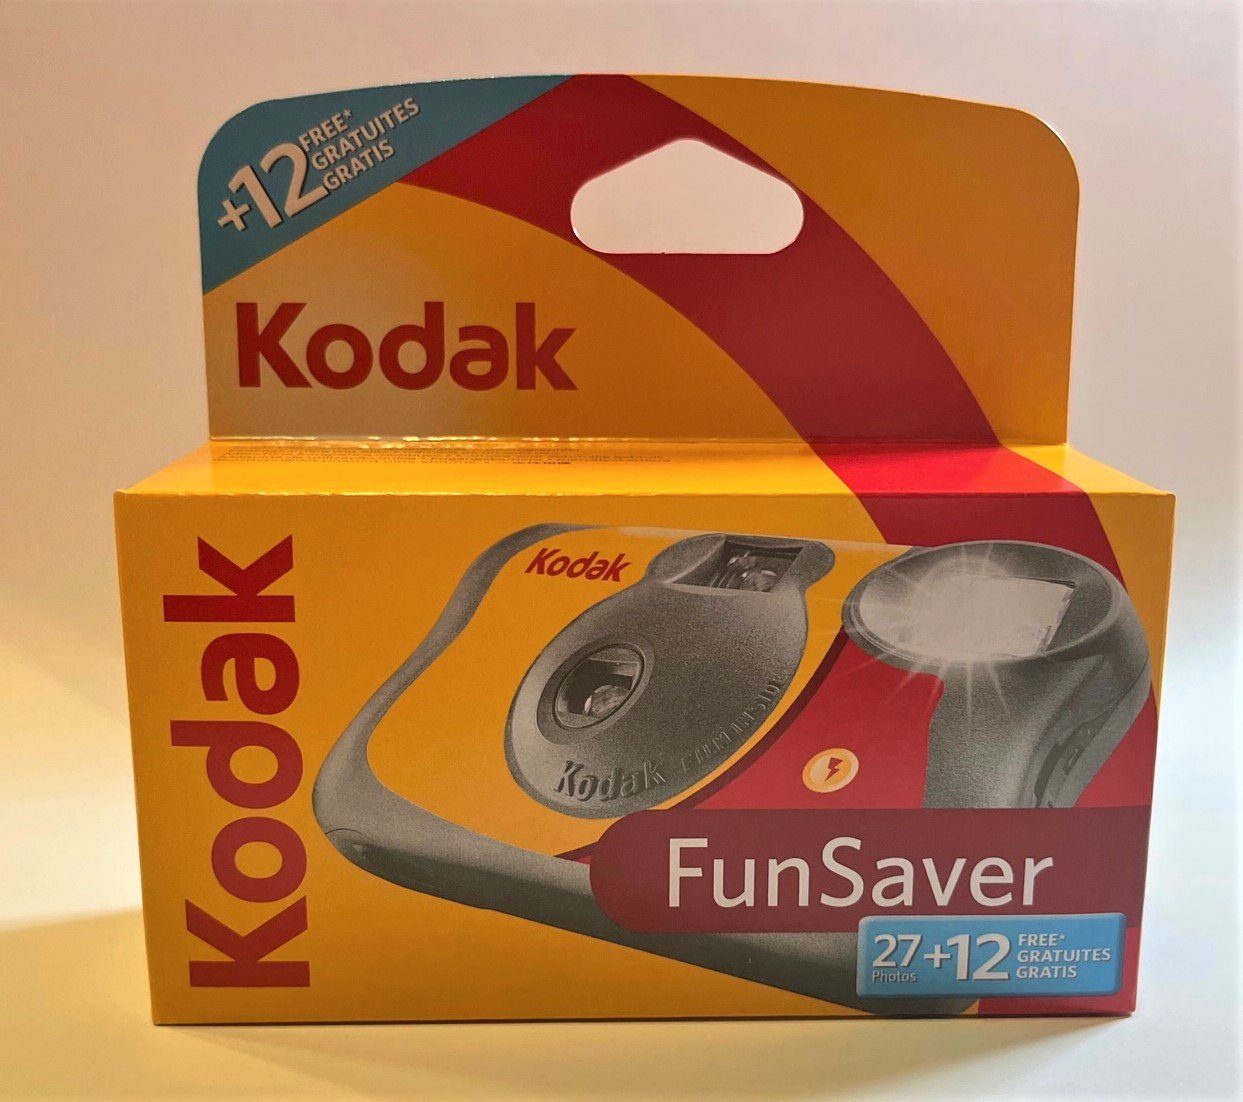 Kodak ISo x Fun Kodak Einwegkamera 800 1 Saver 27+12 Einwegkamera